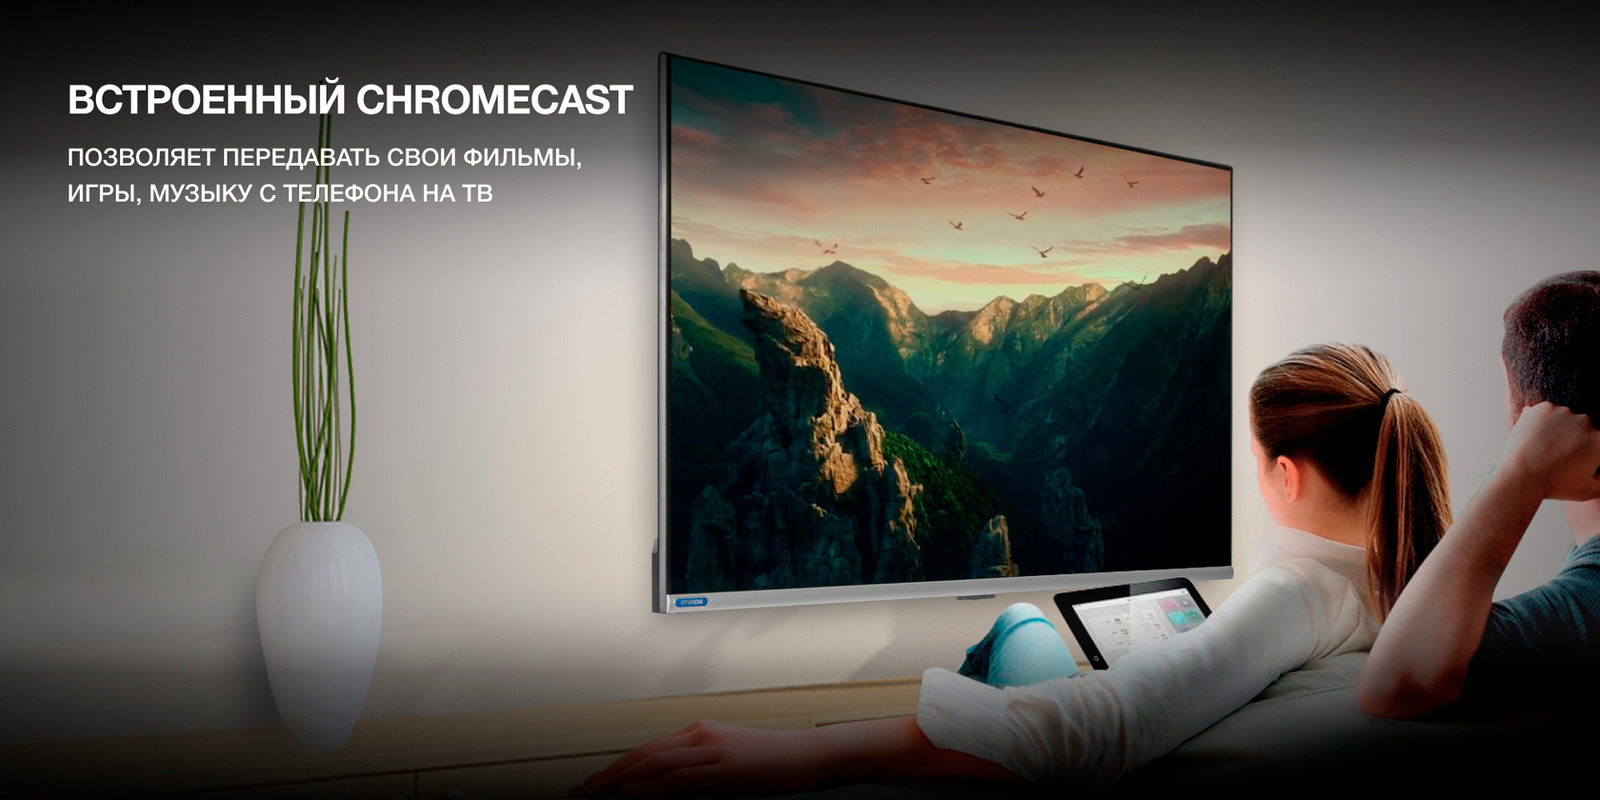 Встроенный Chromecast позволяет передавать файлы непосредственно на ТВ.